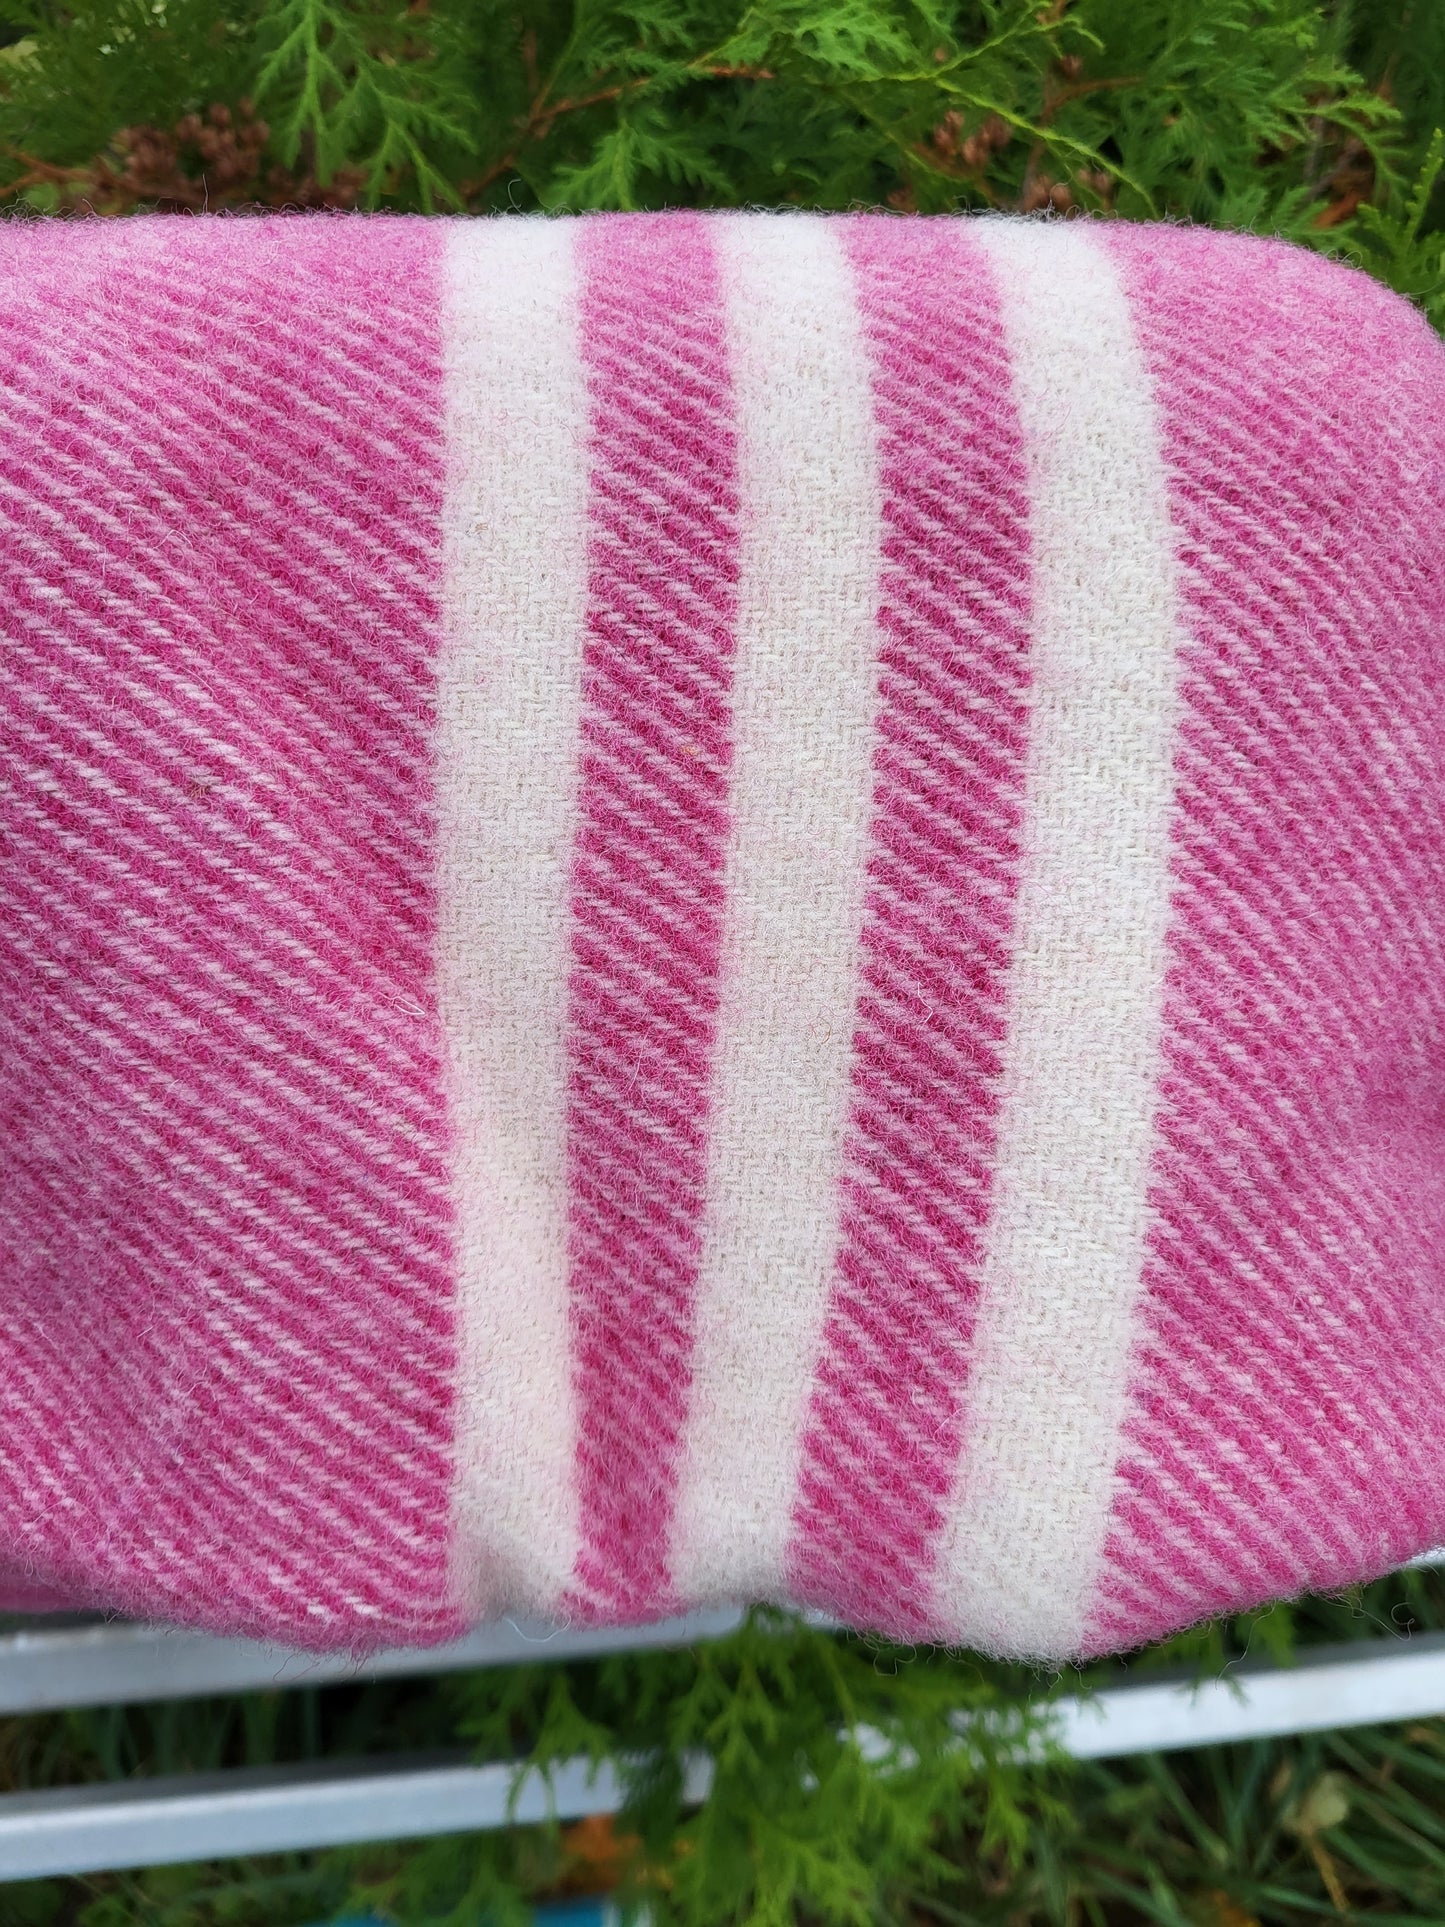 Wool Blanket - Lap